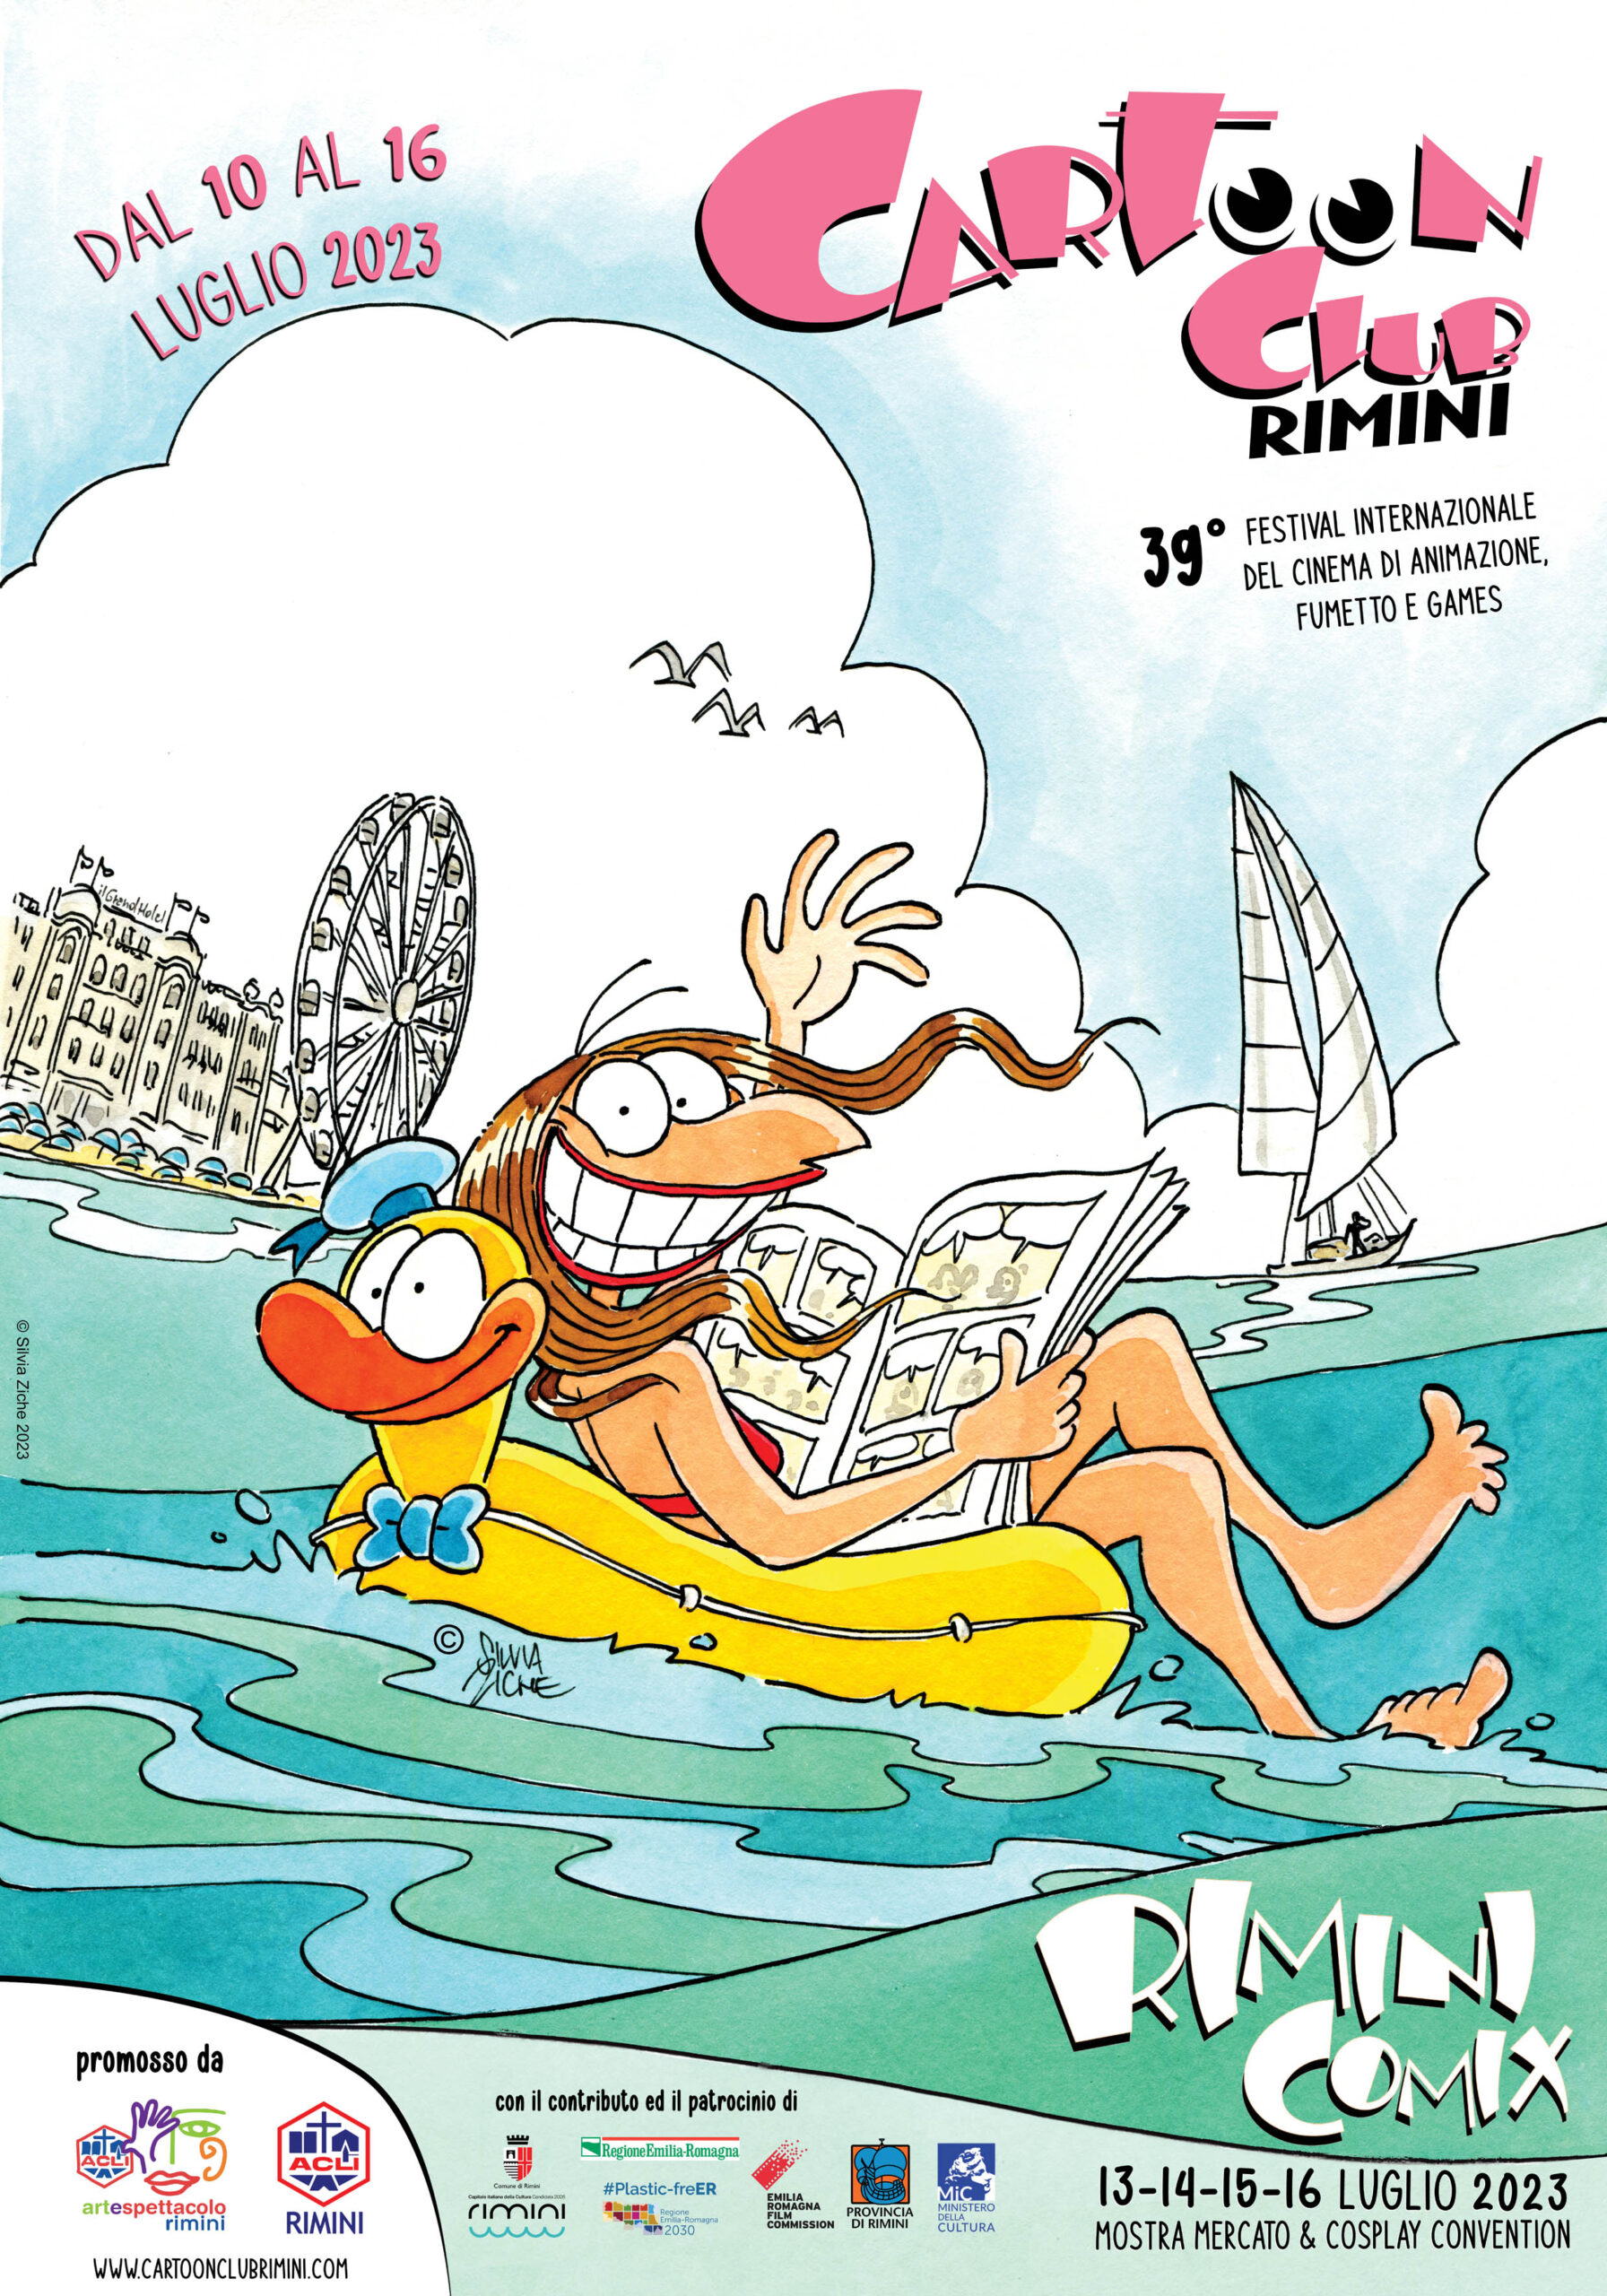 La 39esima edizione di Cartoon Club Rimini Comix: dal 13 al 16 luglio 2023